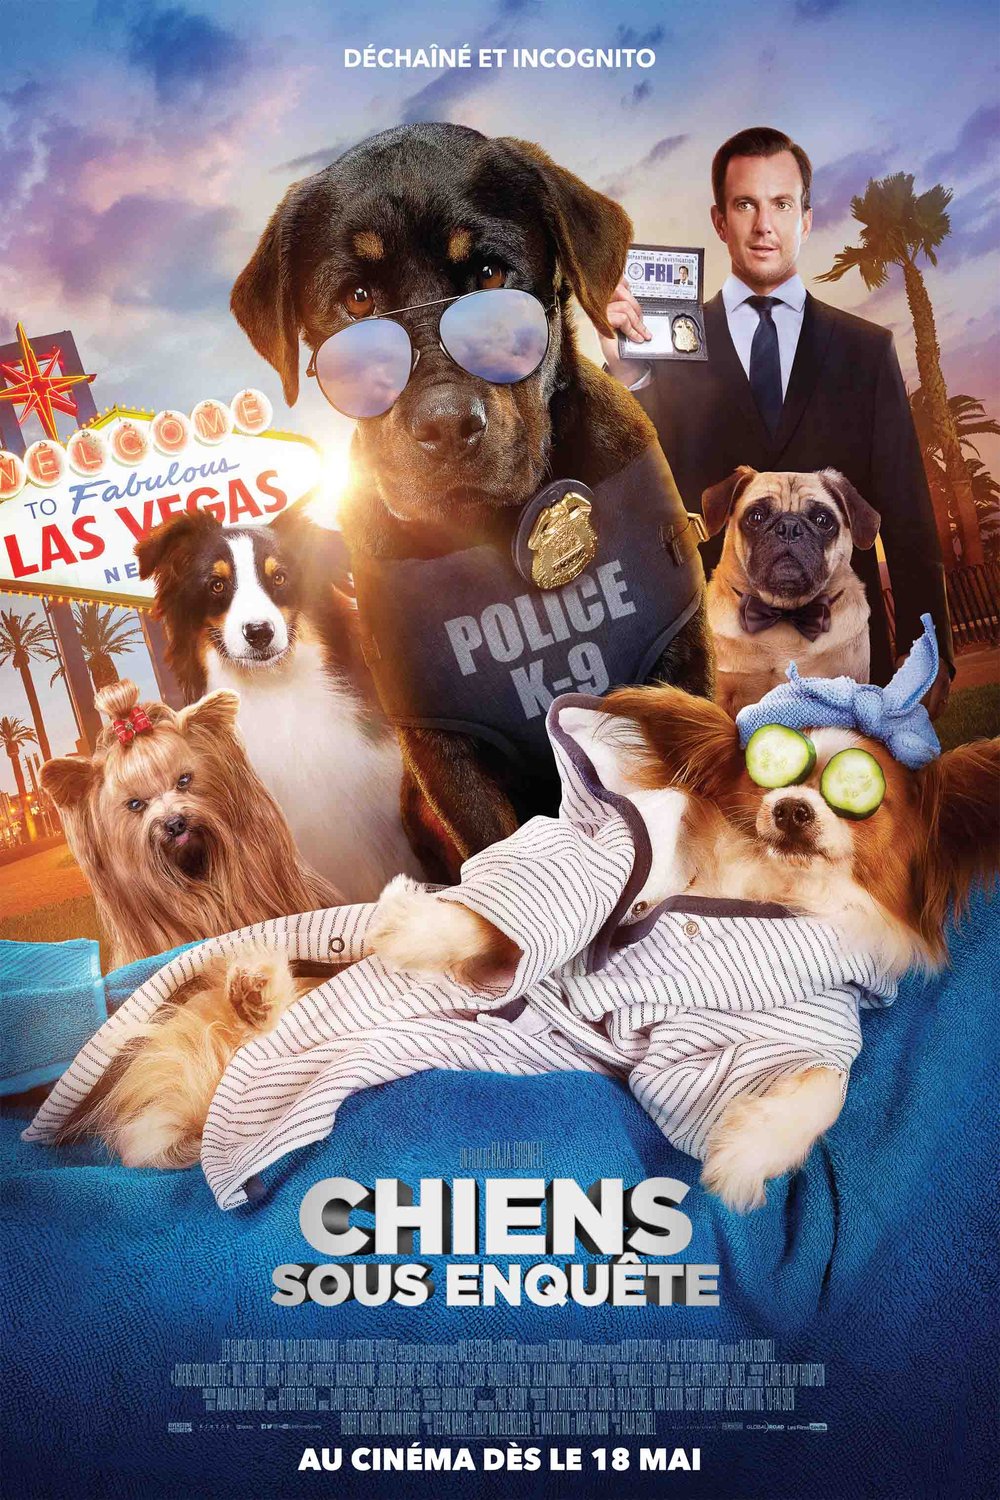 Poster of the movie Chiens sous enquête